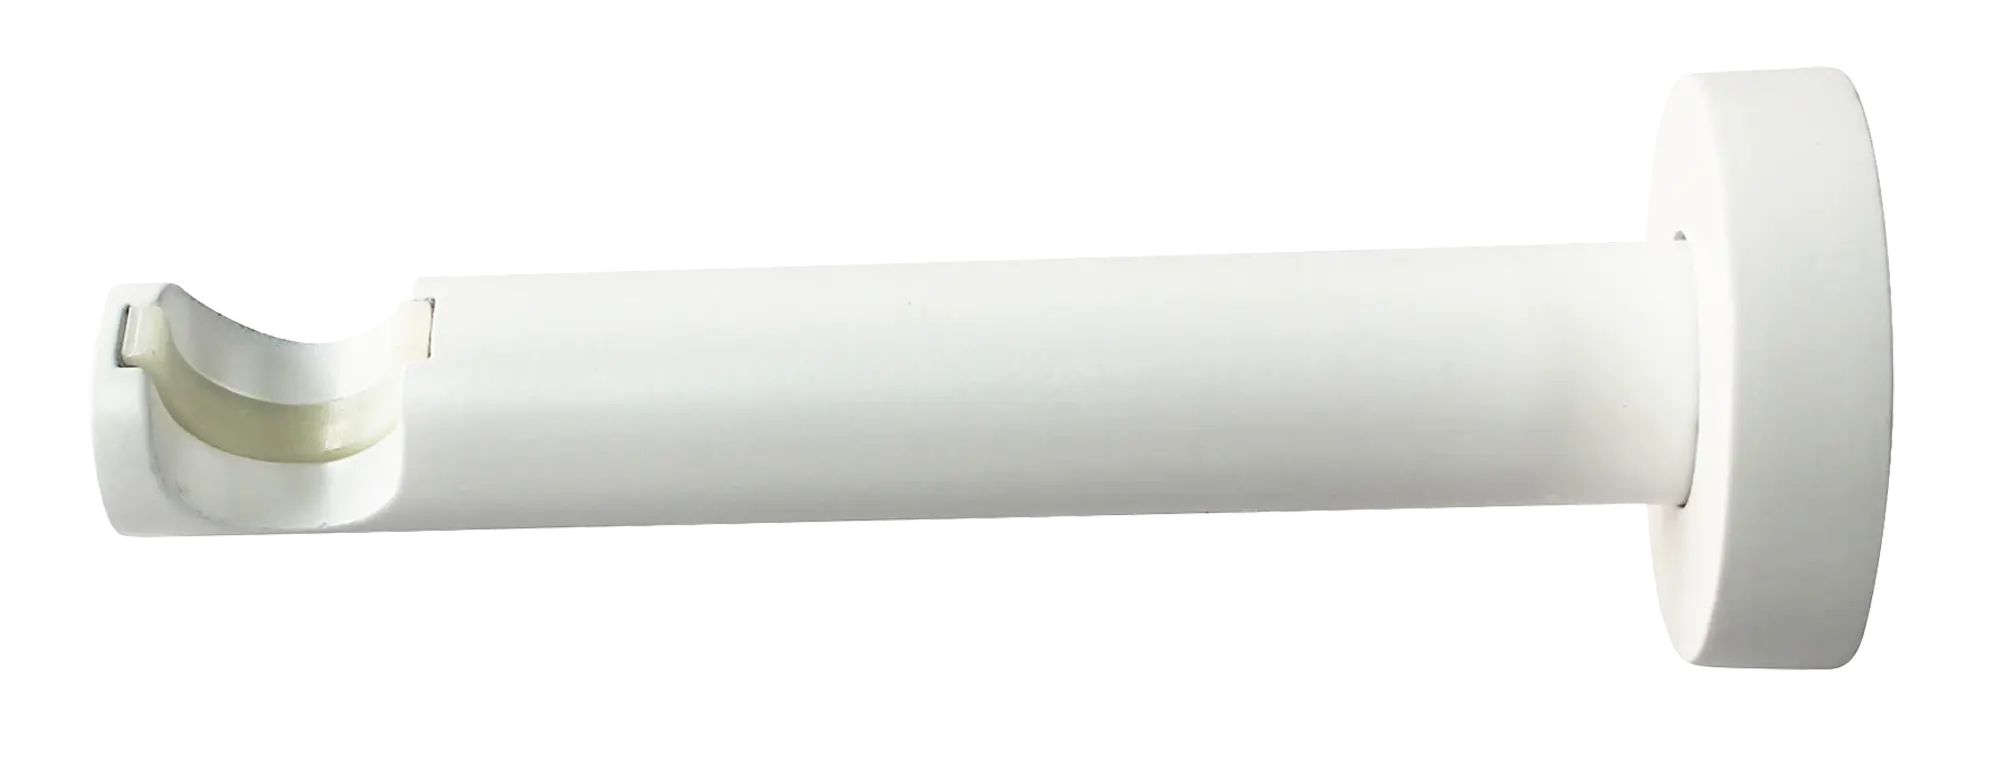 Держатель однорядный с пластиковой вставкой Inspire, металл, цвет белый, 2 см держатель спиннинга с защитной вставкой нержавеющий 40017 kof